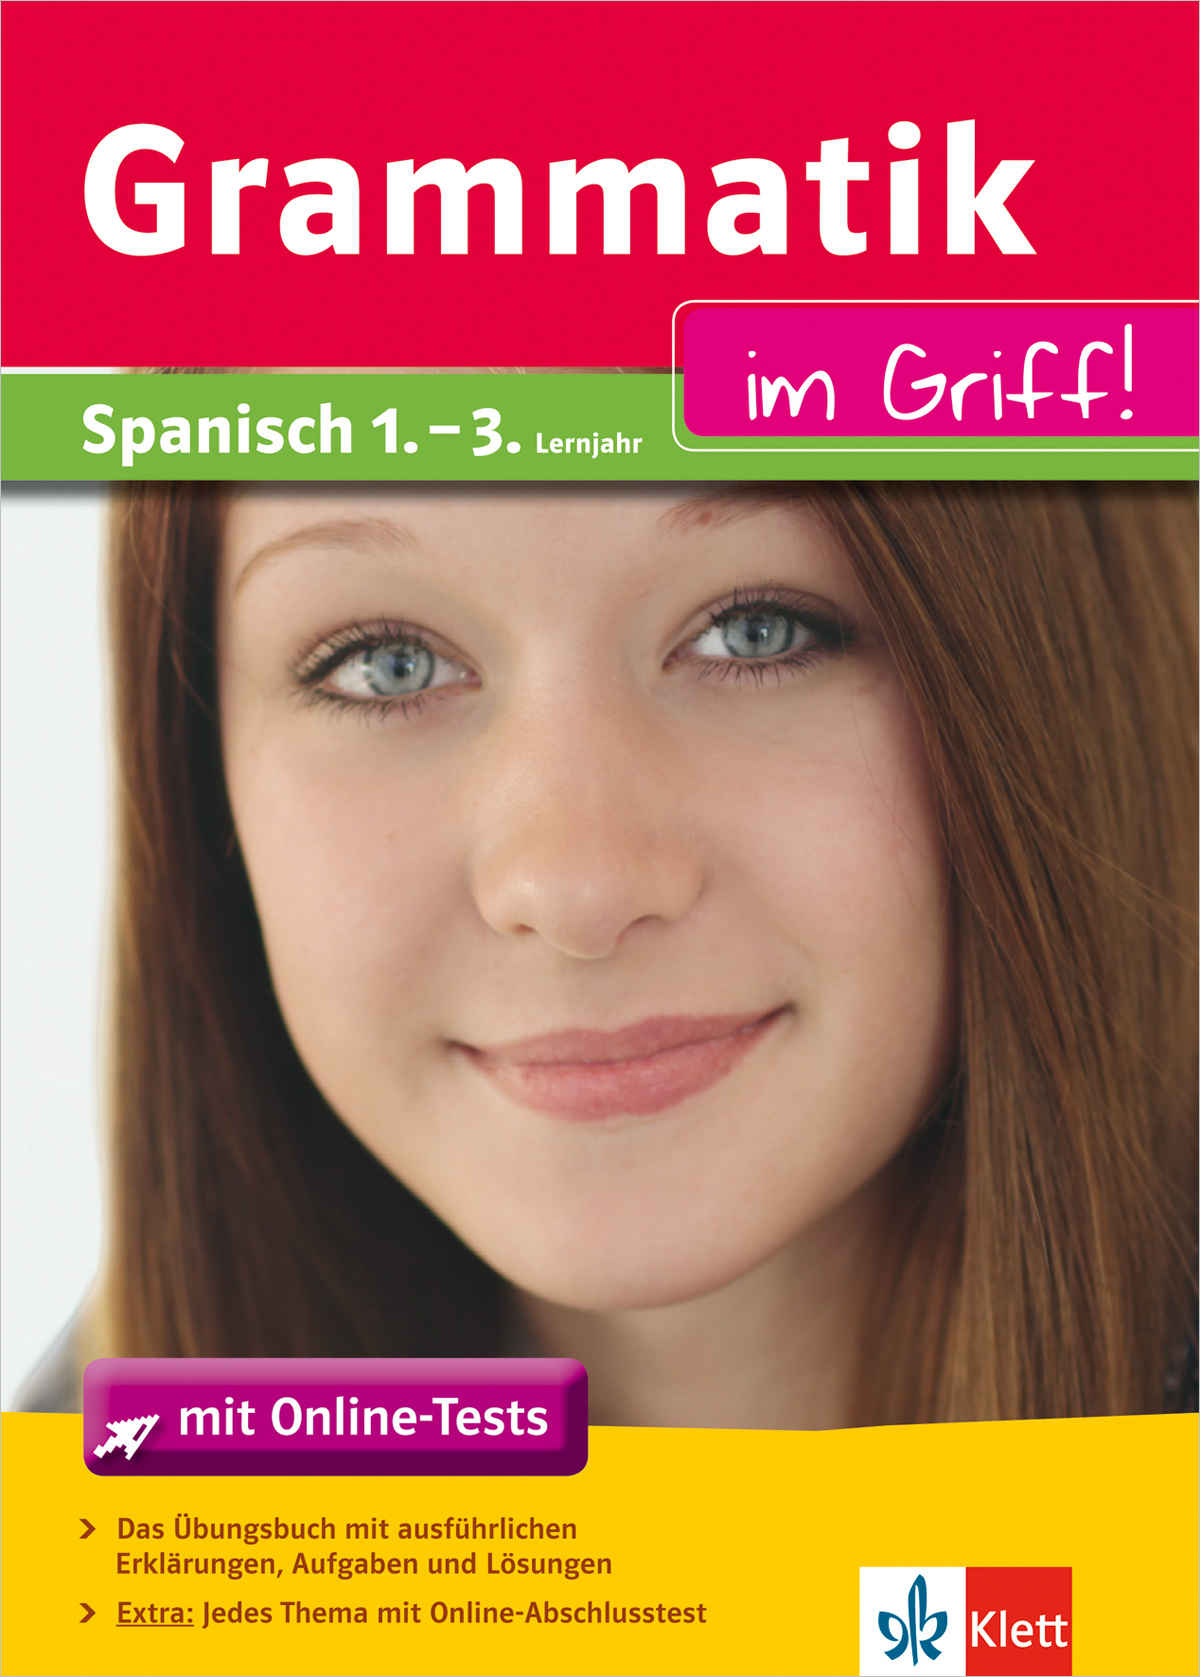 Klett Grammatik im Griff Spanisch 1. - 3- Lernjahr